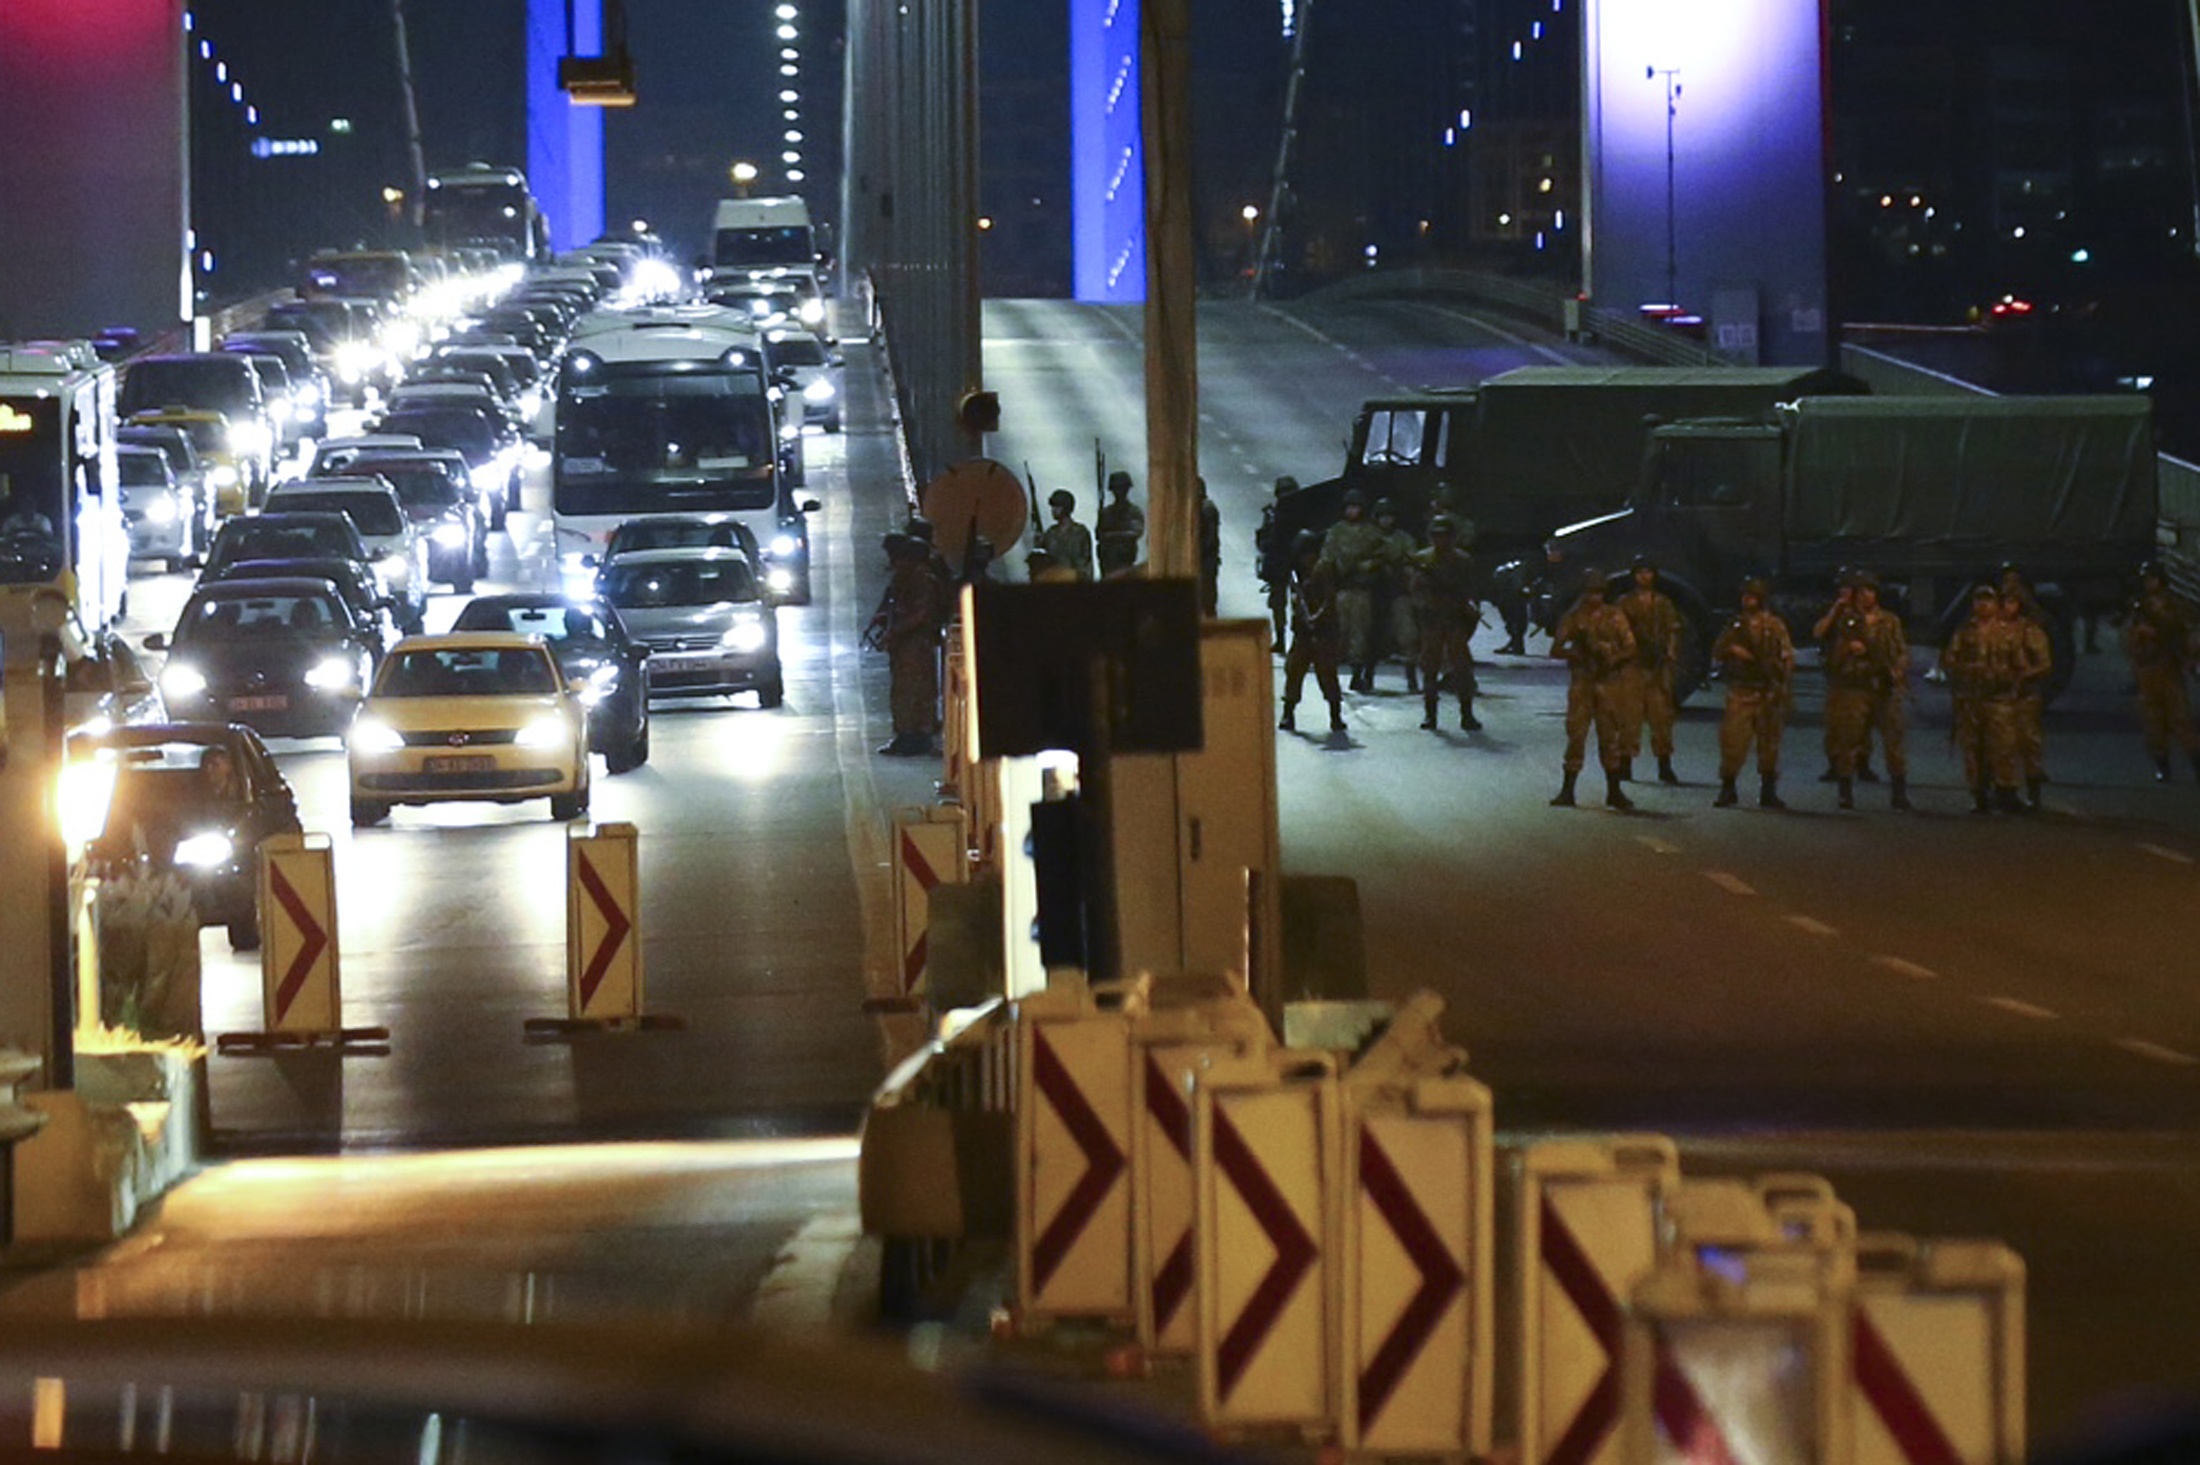  الجيش التركي يعلن استيلائه على السلطة .. وأردوغان يدعو للتظاهر 